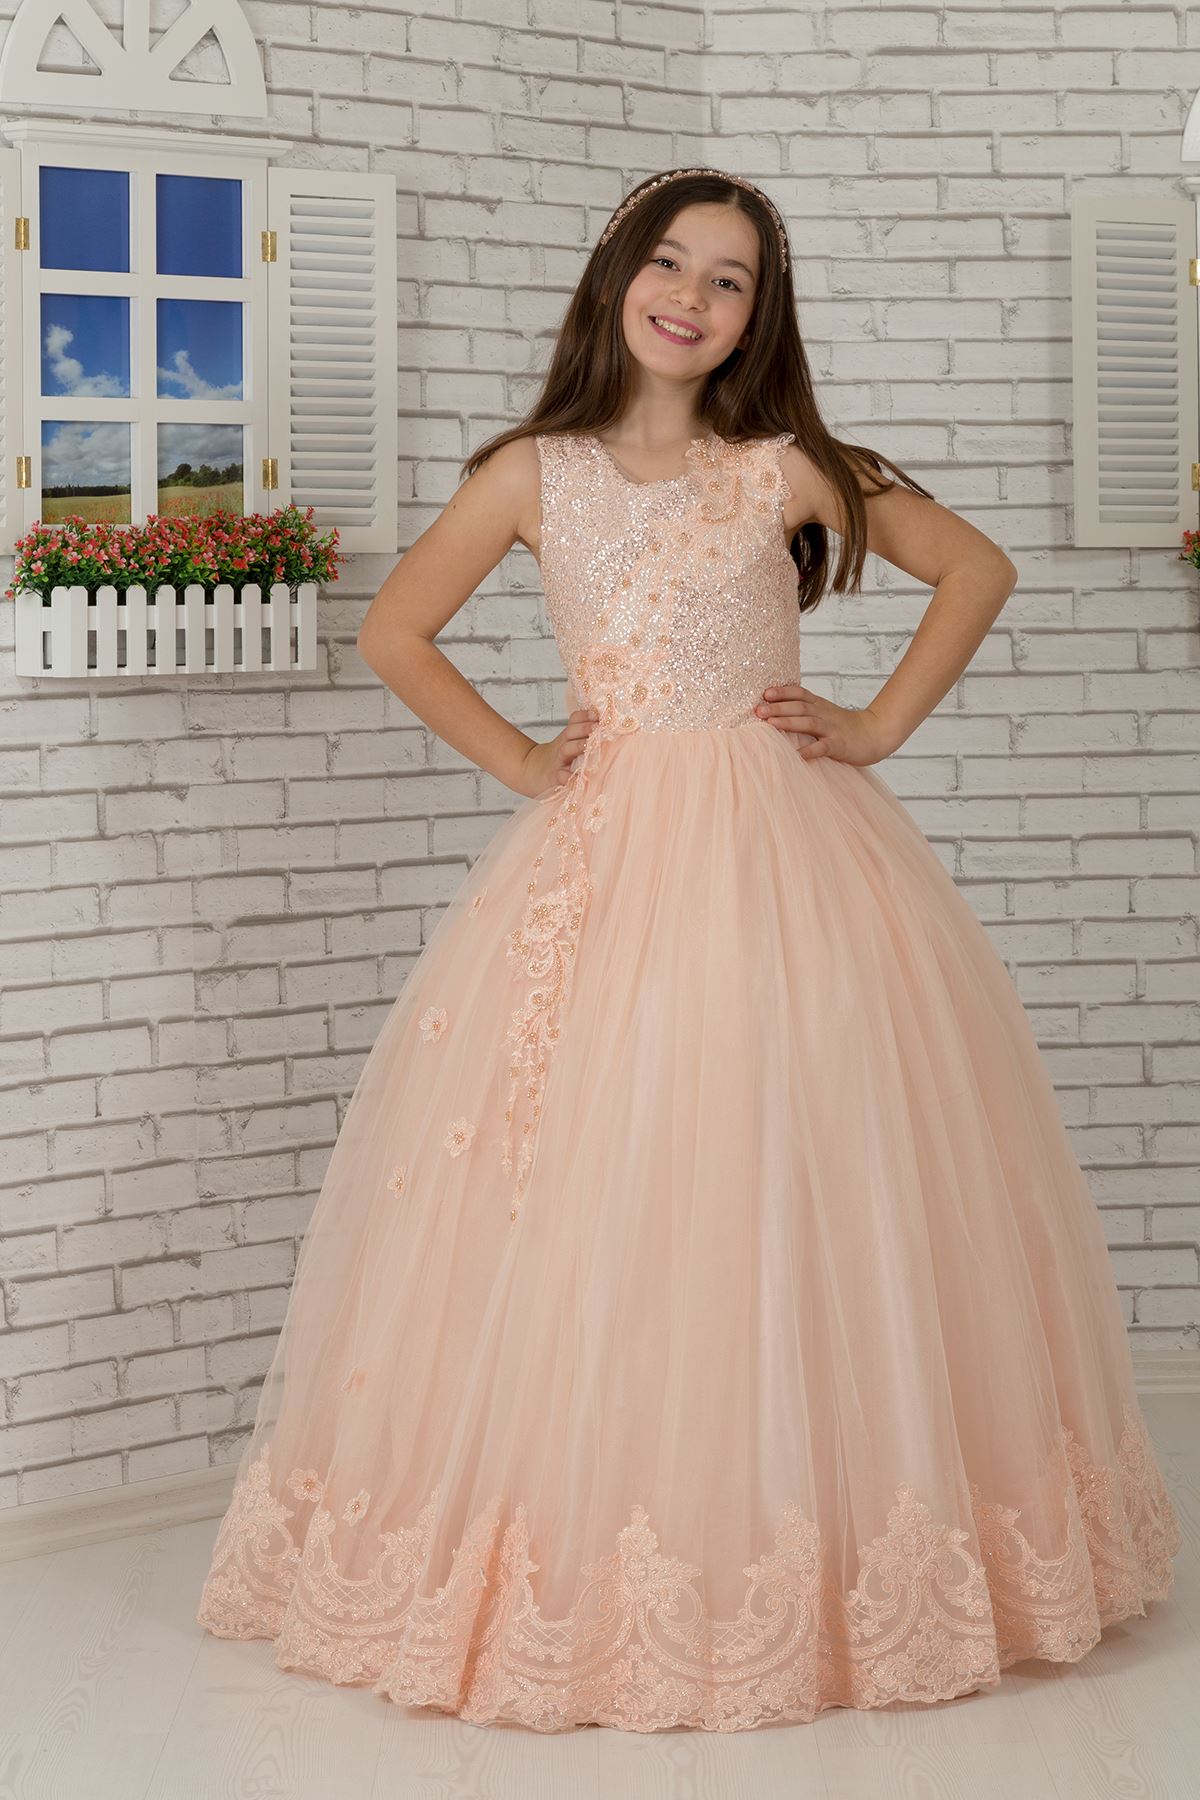 Боди со специальными пайетками, вышитая аппликация, детализированный подол Пушистое вечернее платье для девочек 600 лососевых цветов